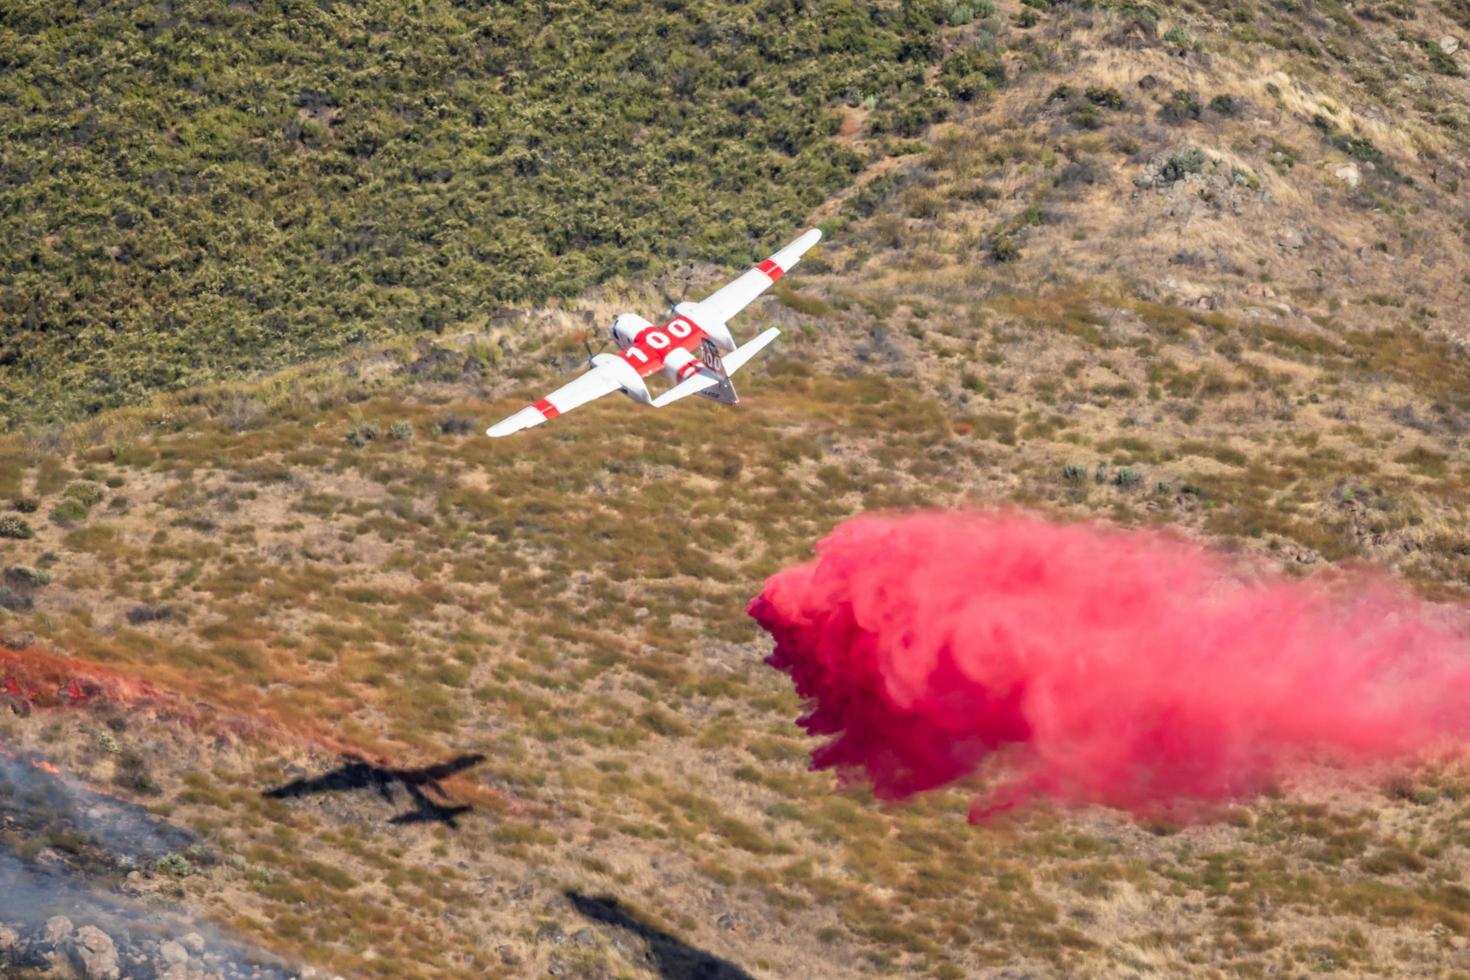 winchester, ca eua - 14 de junho de 2020, a aeronave cal fire lança retardante de fogo em um incêndio florestal seco no topo de uma colina perto de winchester, califórnia. foto